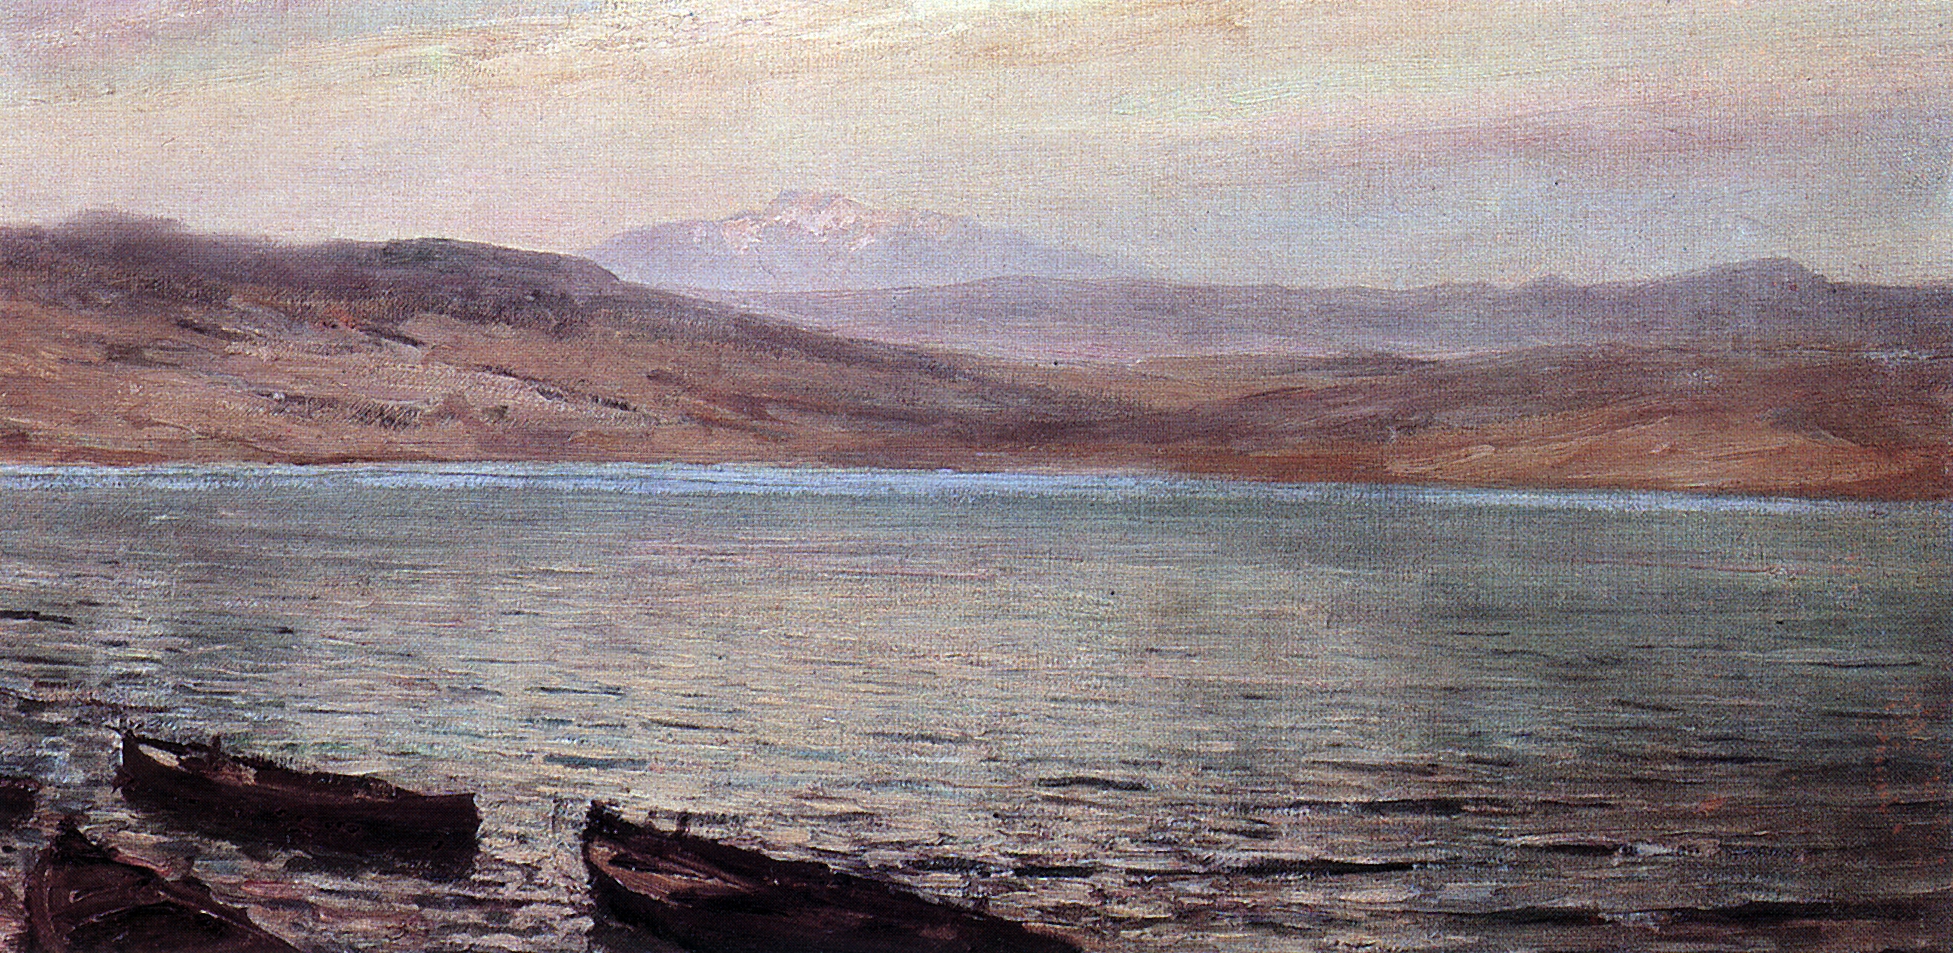 Поленов. Тивериадское (Генисаретское) озеро. 1881-882